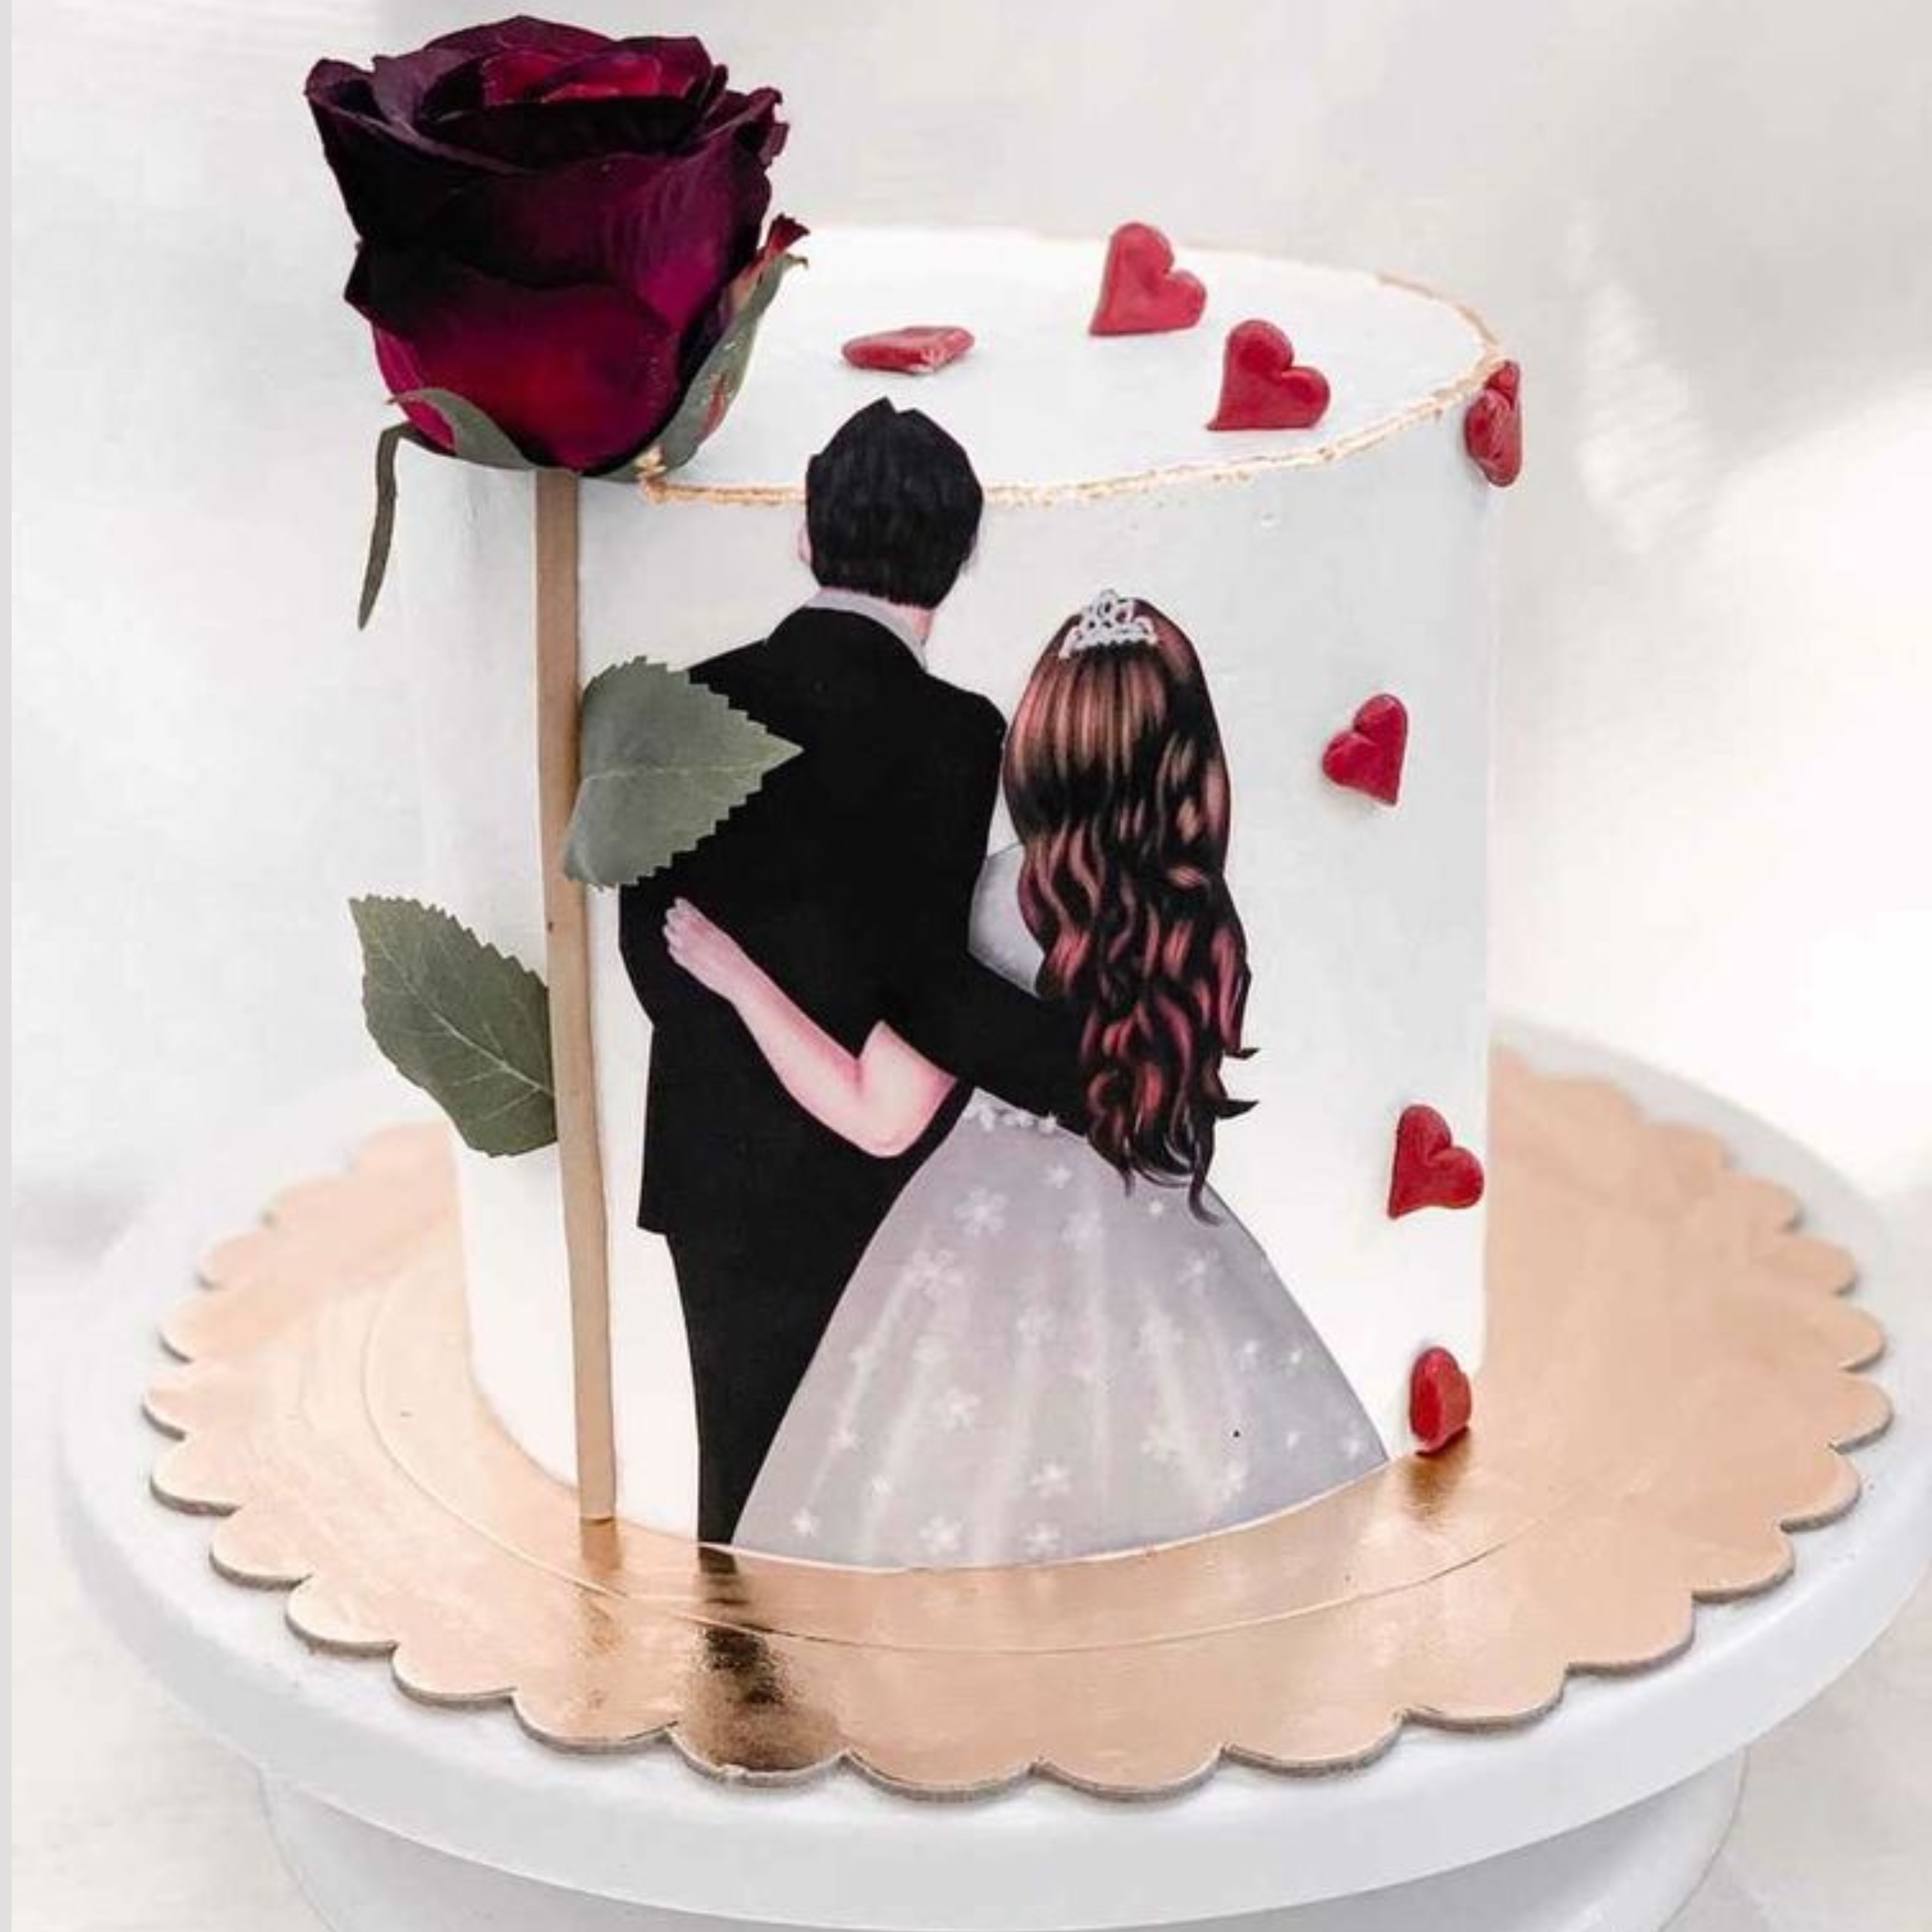 Customised design cake for husband's birthday - Decorated - CakesDecor